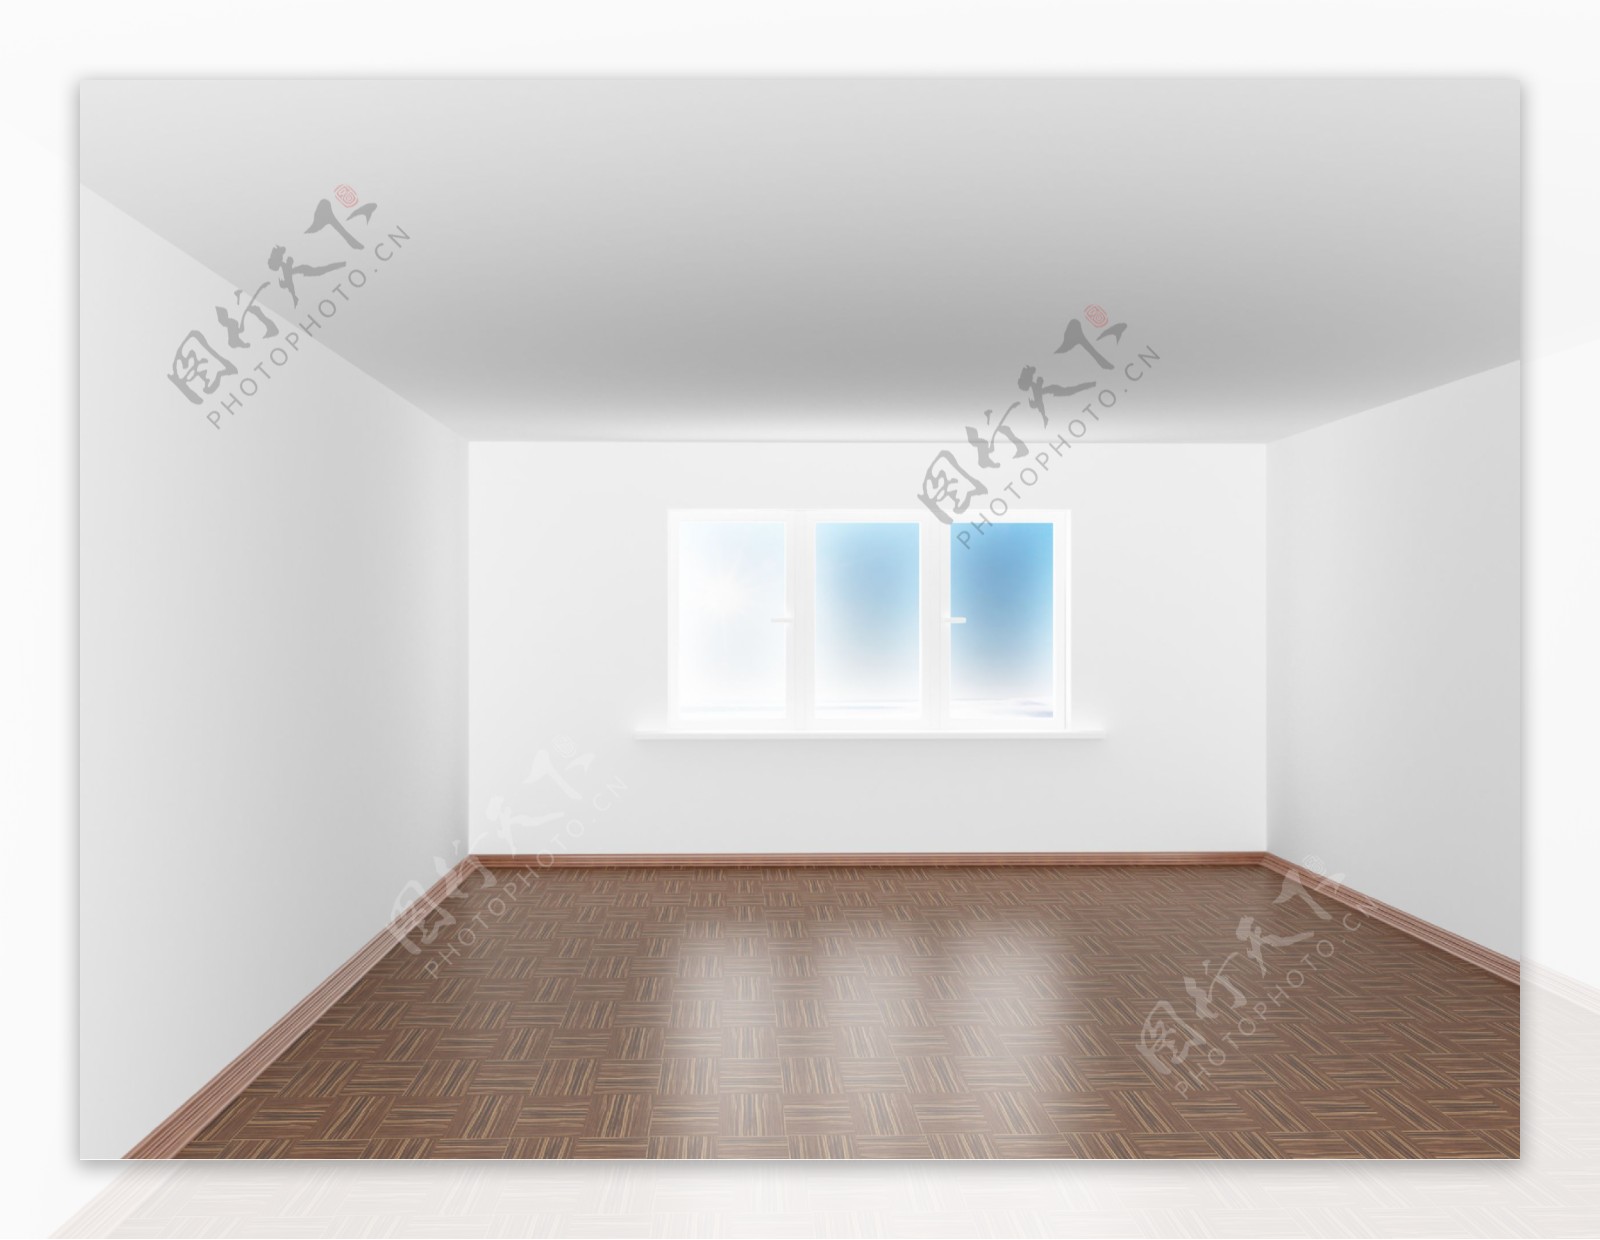 空白房间里的门窗户图片